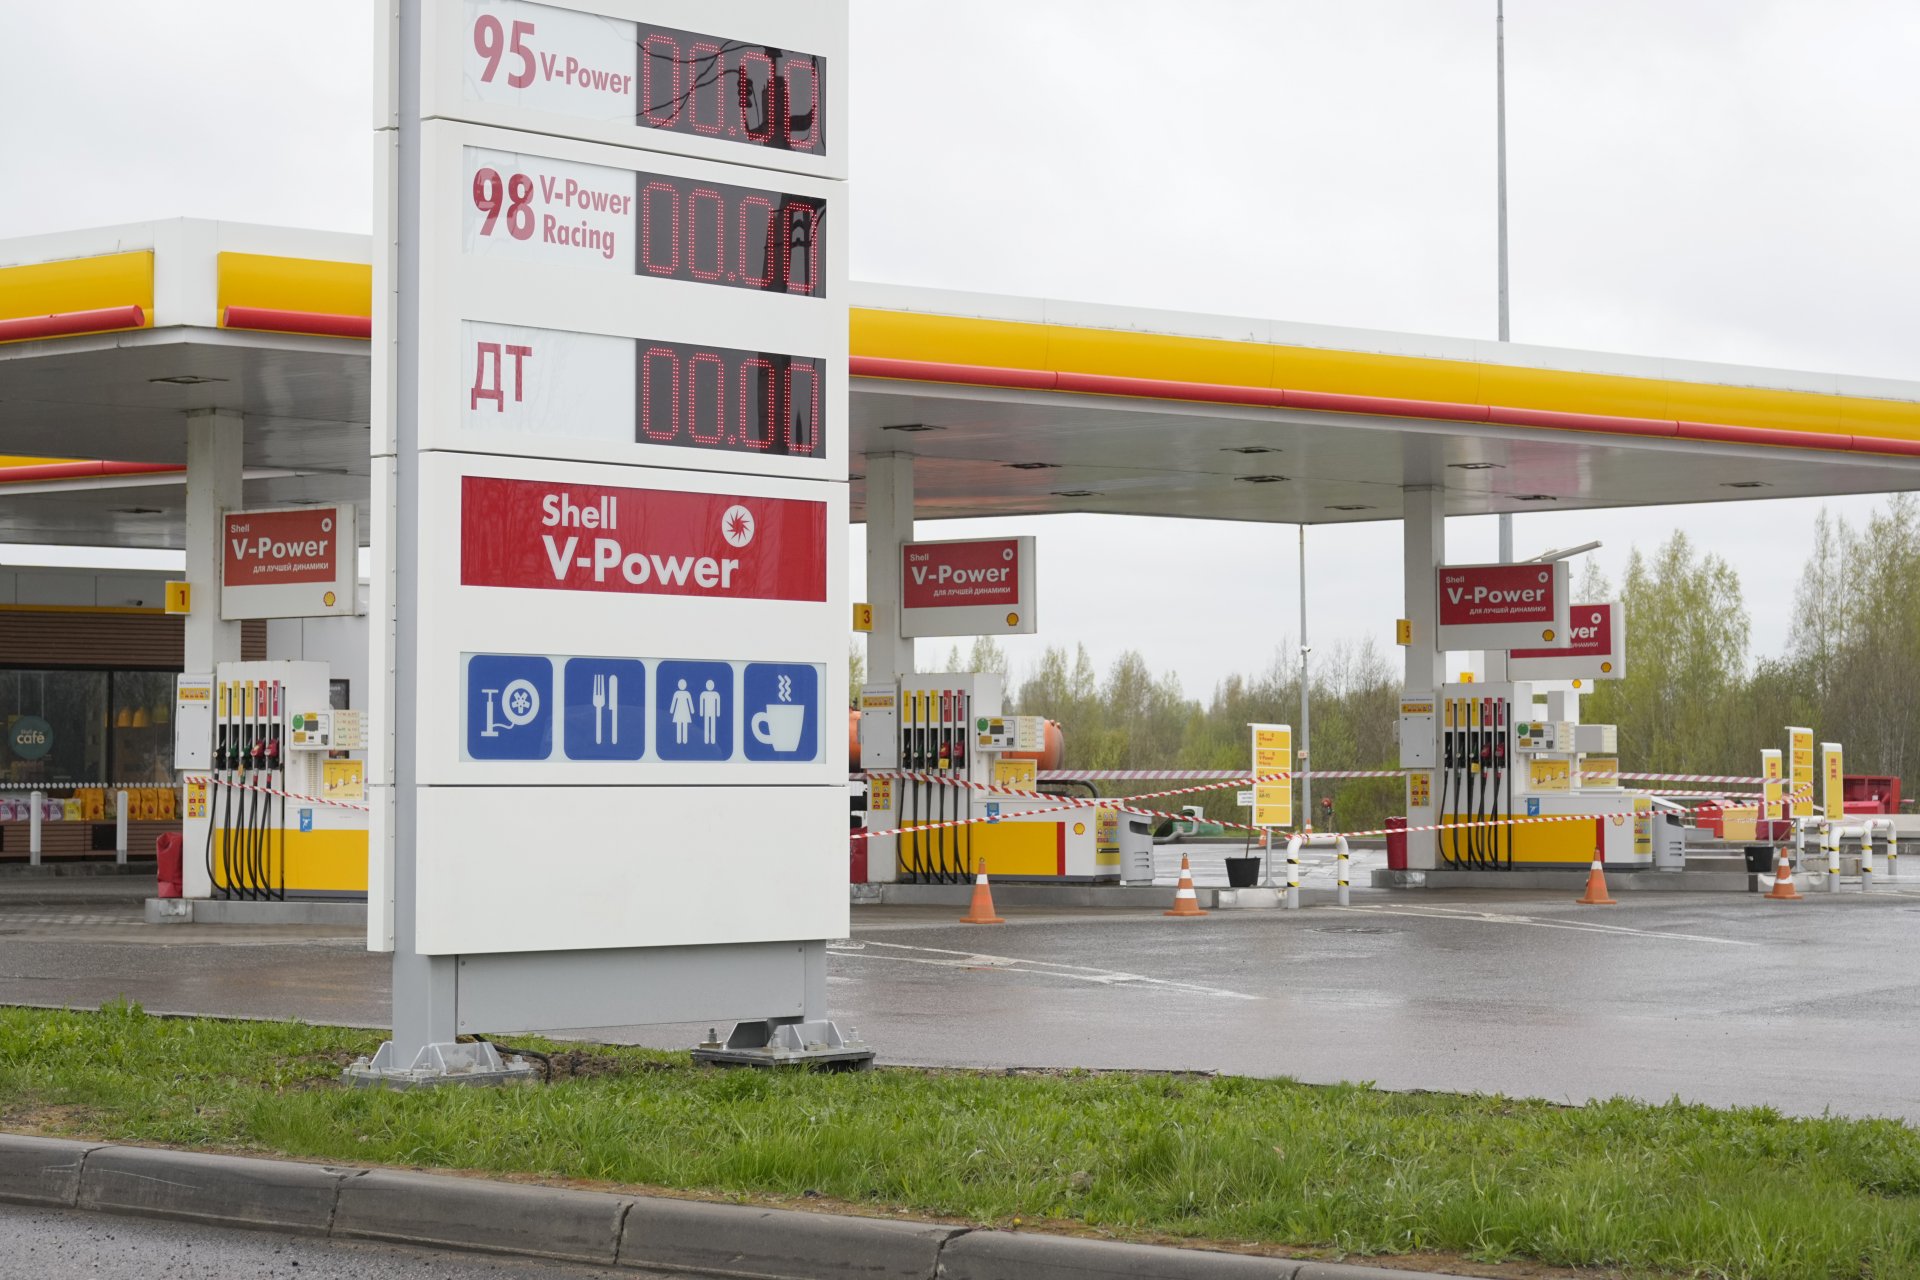 Затворена бензиностанция на Shell в Санкт Петербург, Русия, 16 май 2022 г. Шел обяви плановете си за изтегляне от Русия заради военните действия в Украйна